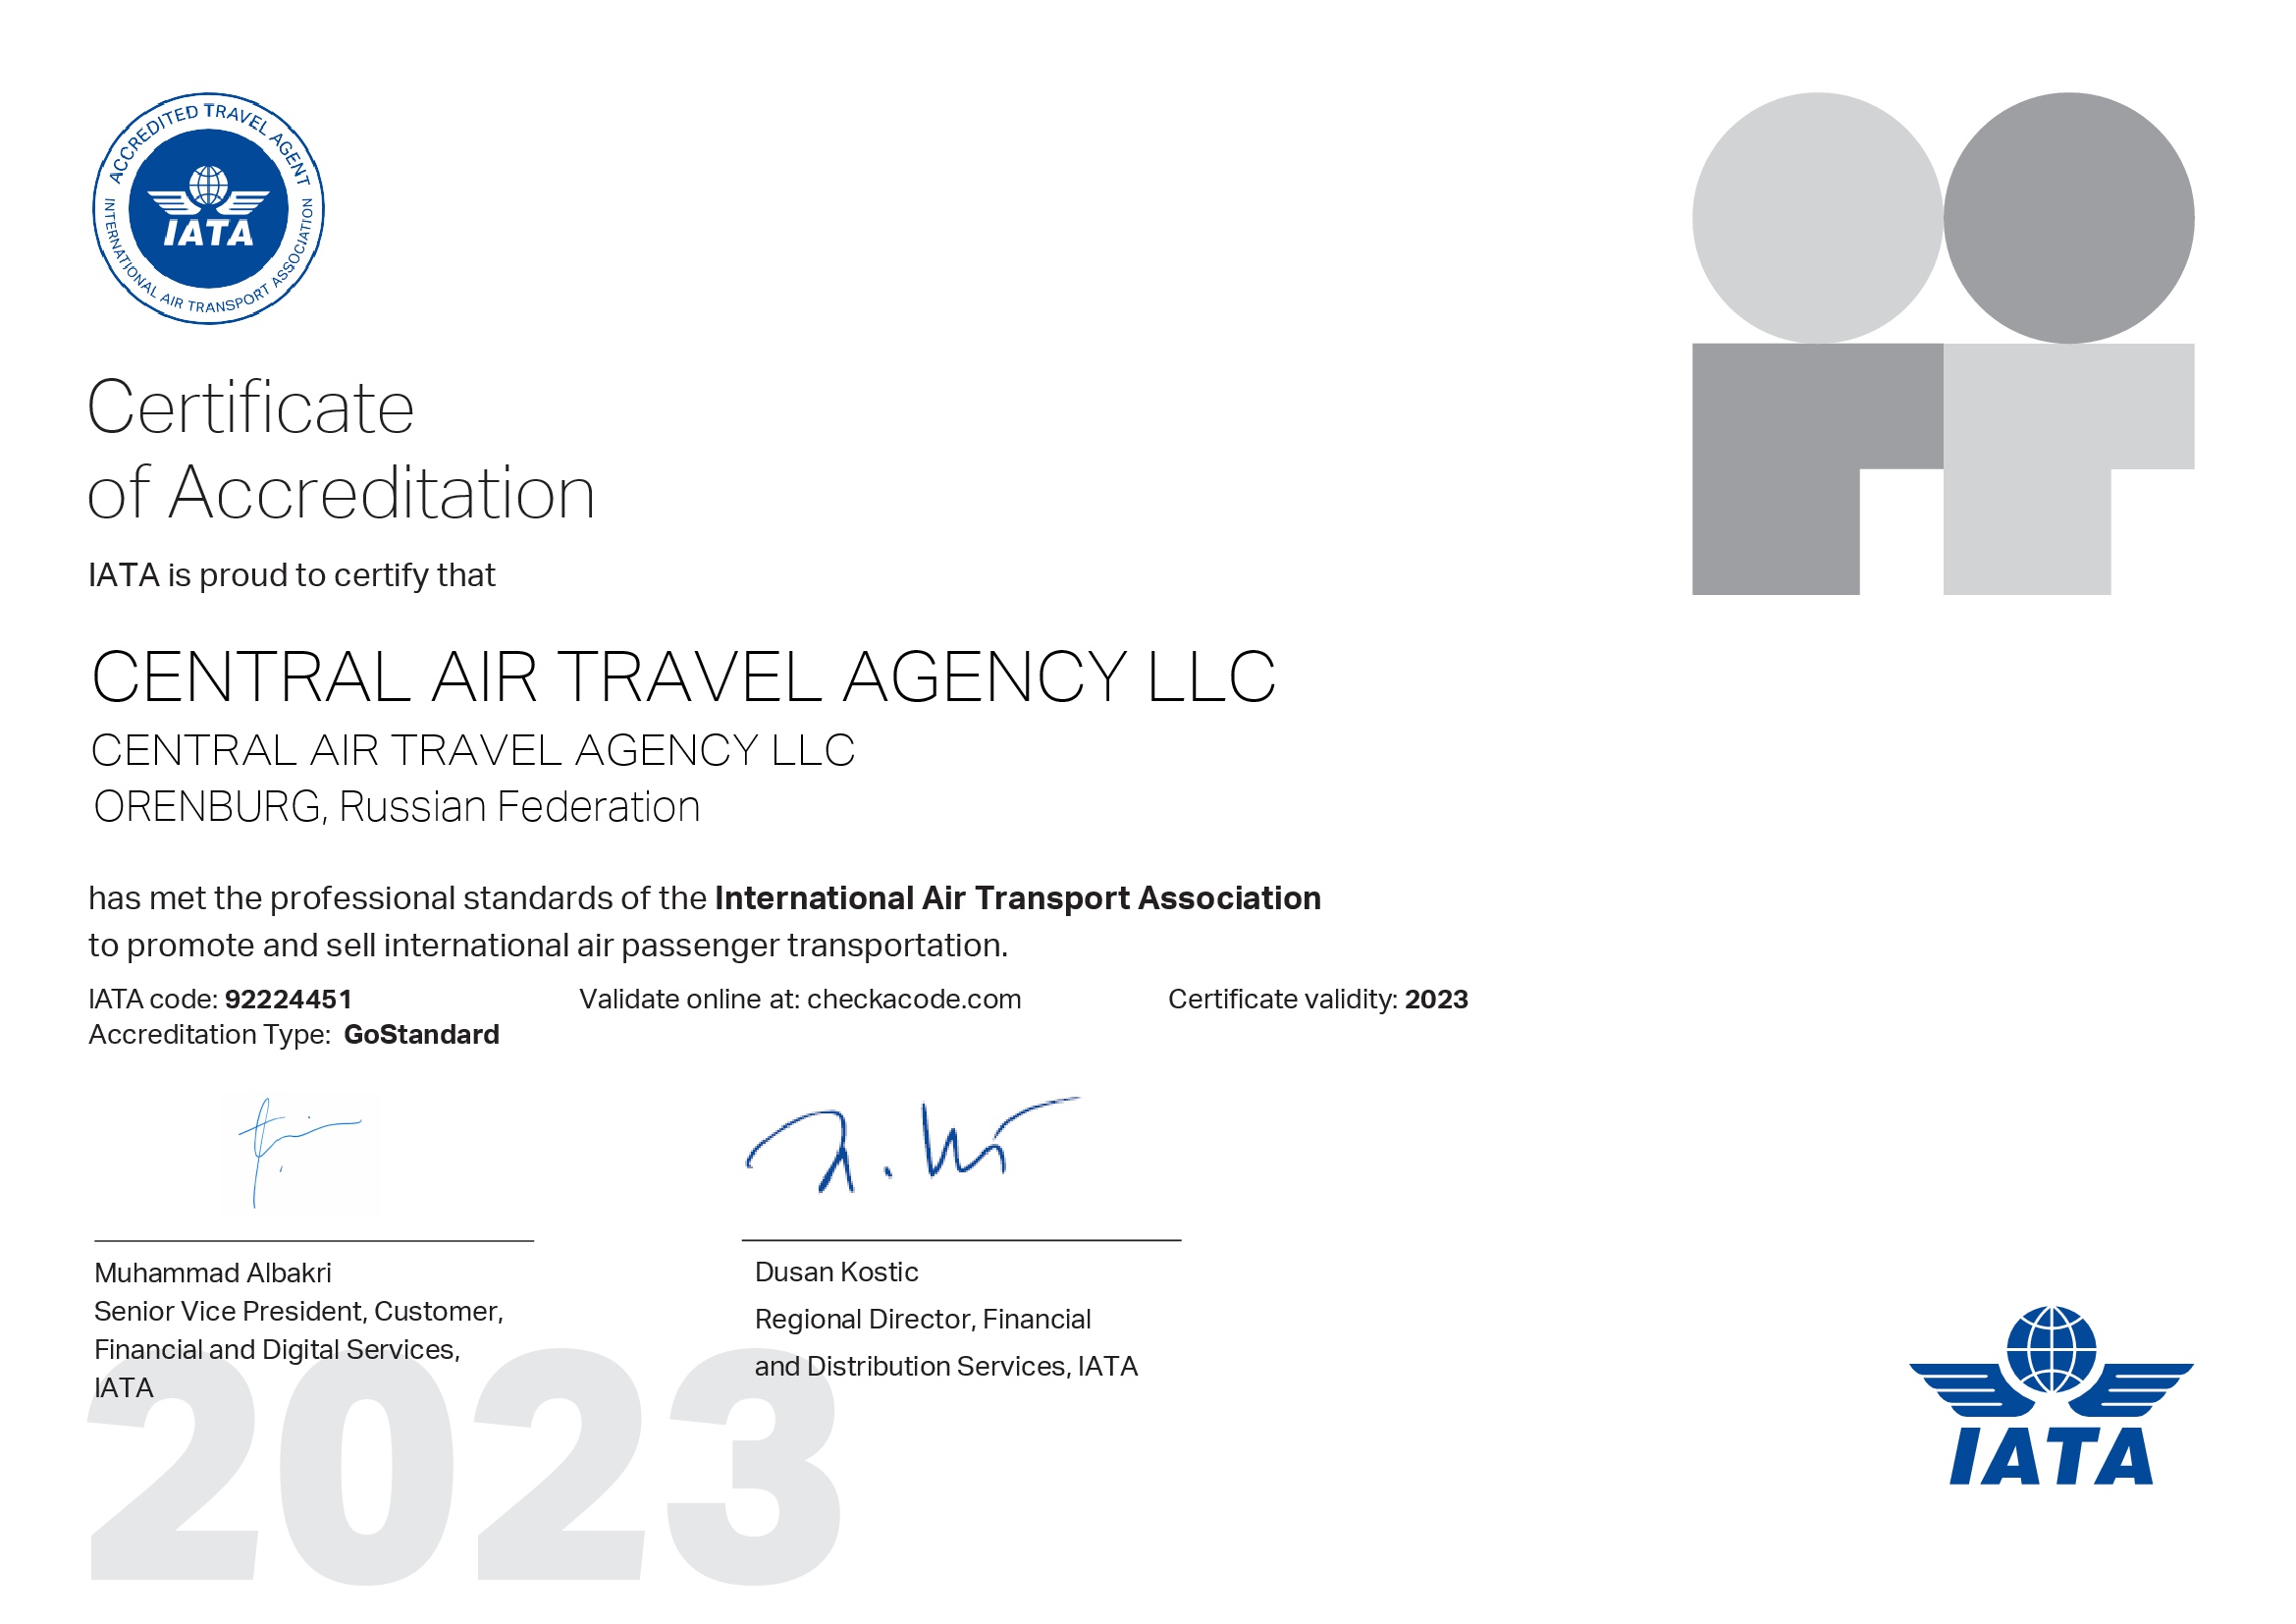 Сертификат об аккредитации в IATA Оренбург 2023